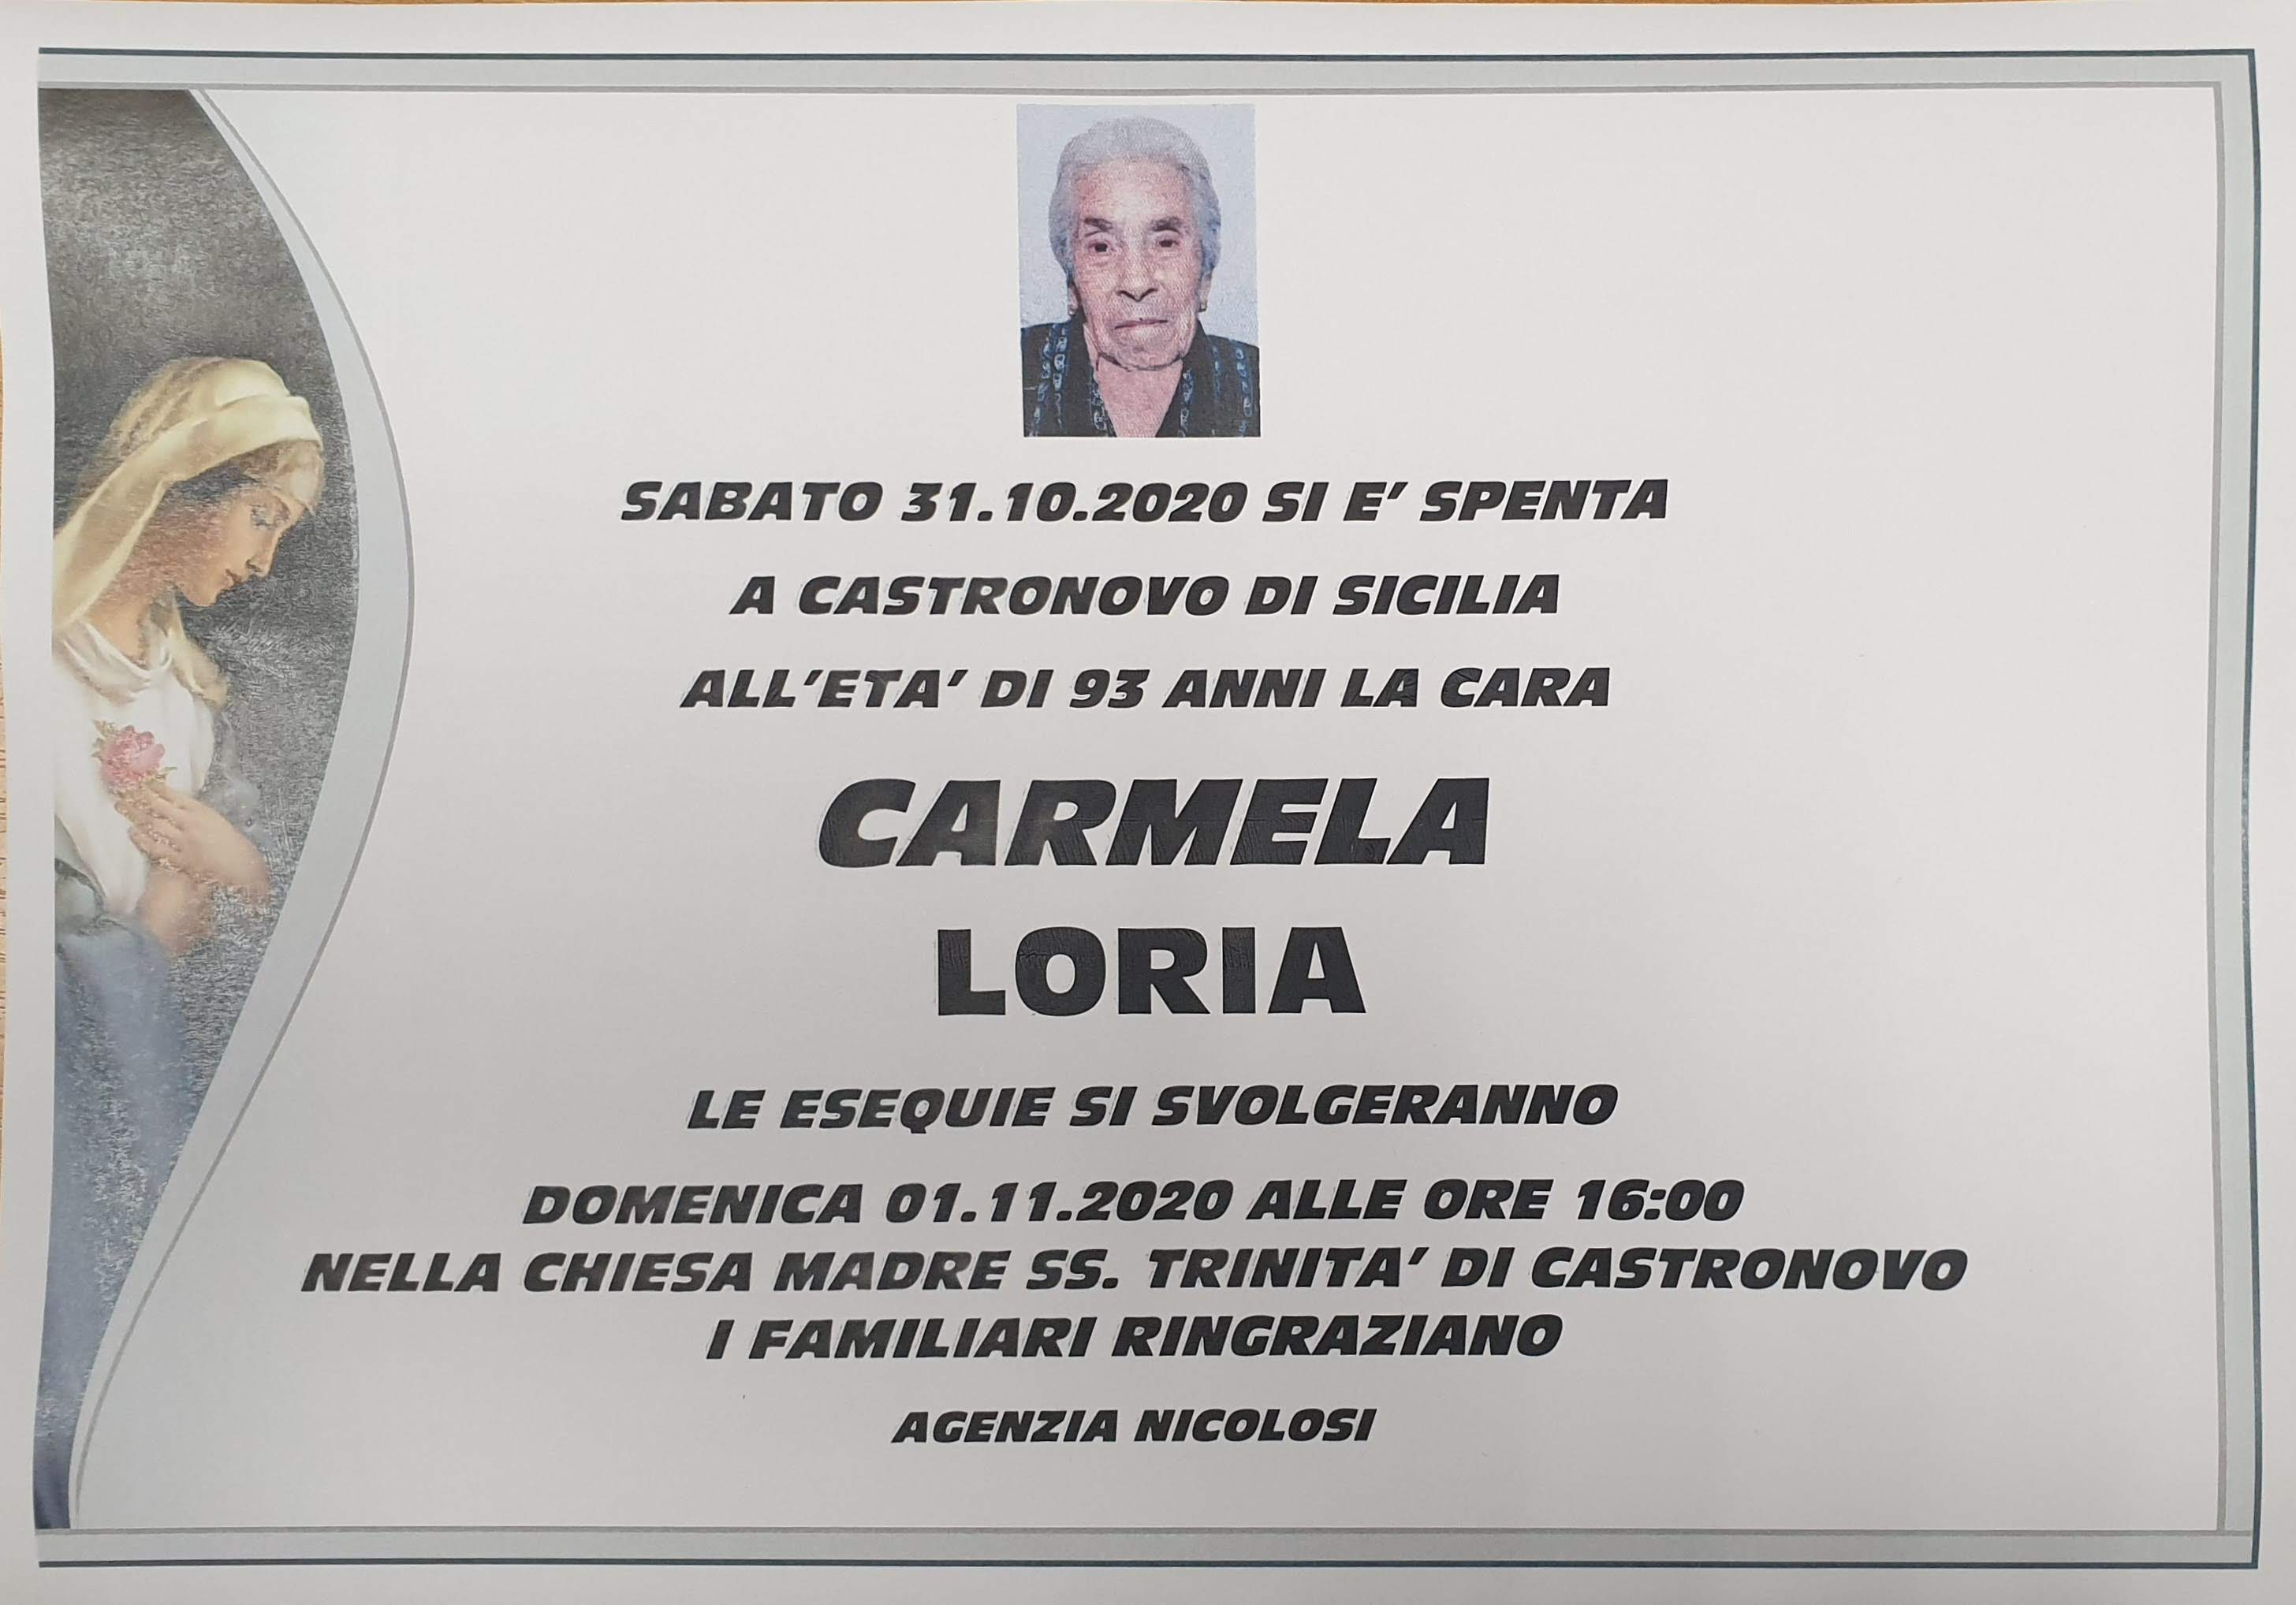 Carmela Loria